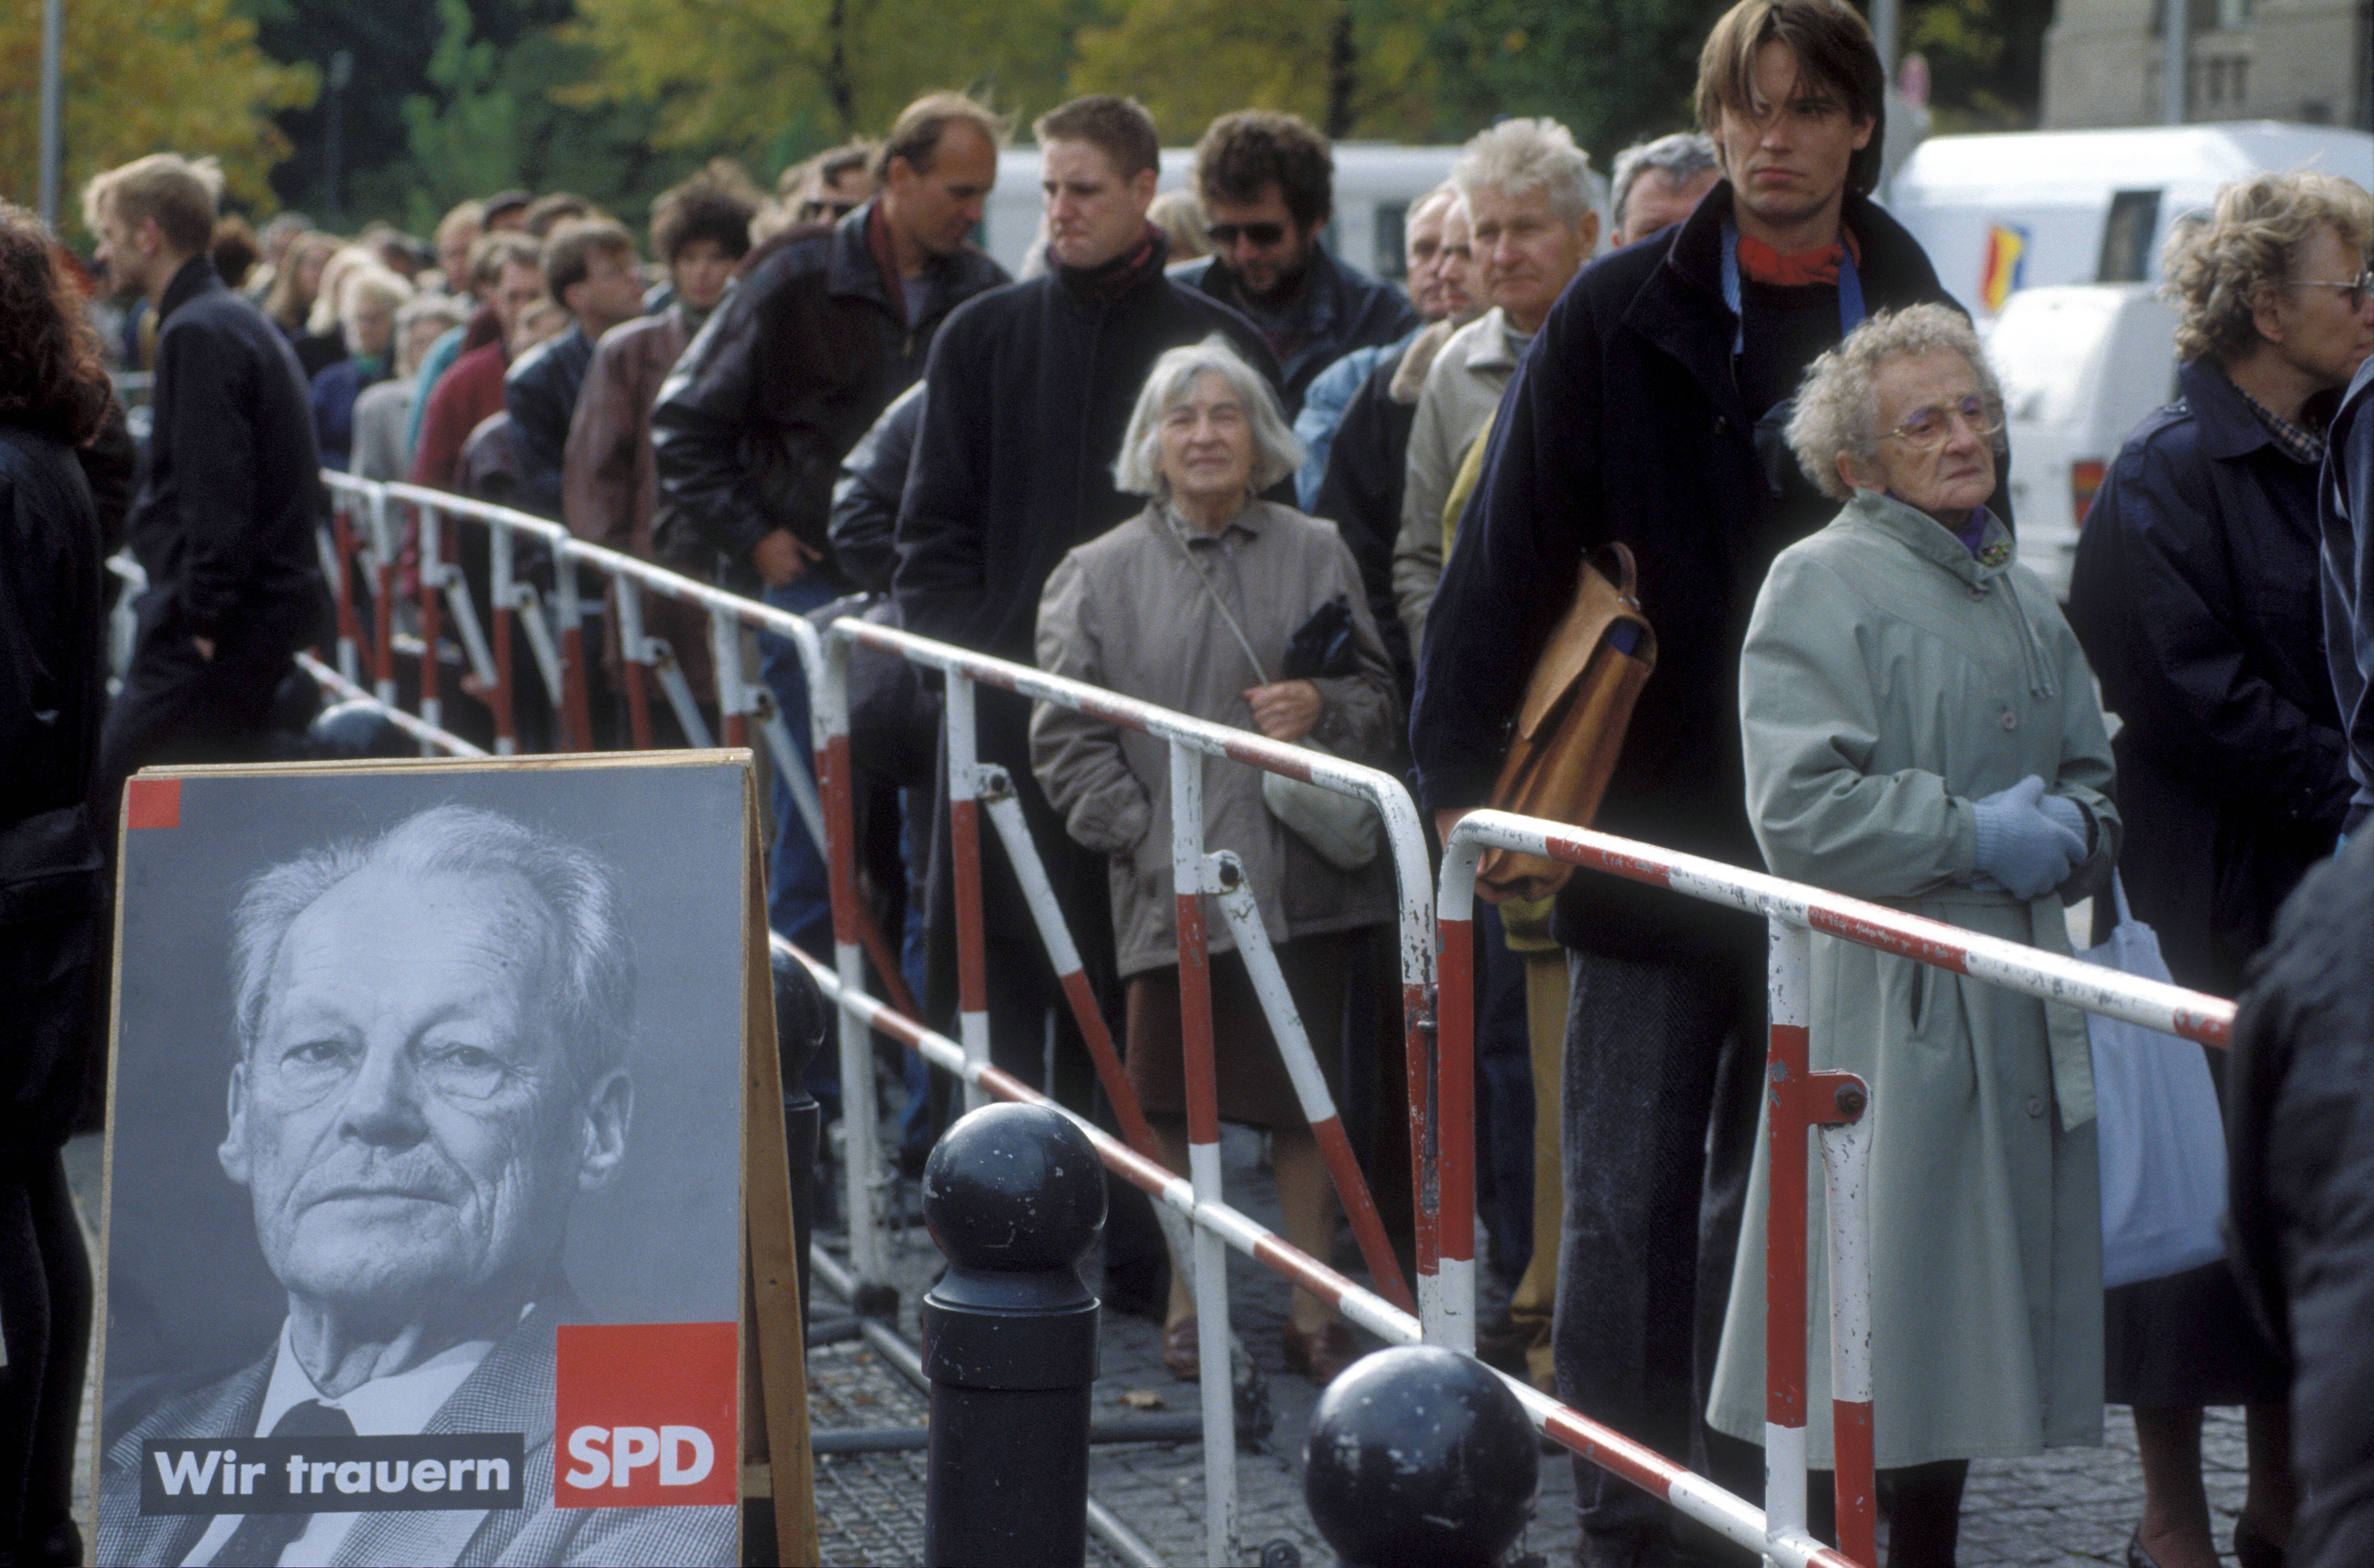 Abschied von einem Idol: Berliner warten vor dem Rathaus Schöneberg, um Willy Brandt die letzte Ehre zu erweisen.